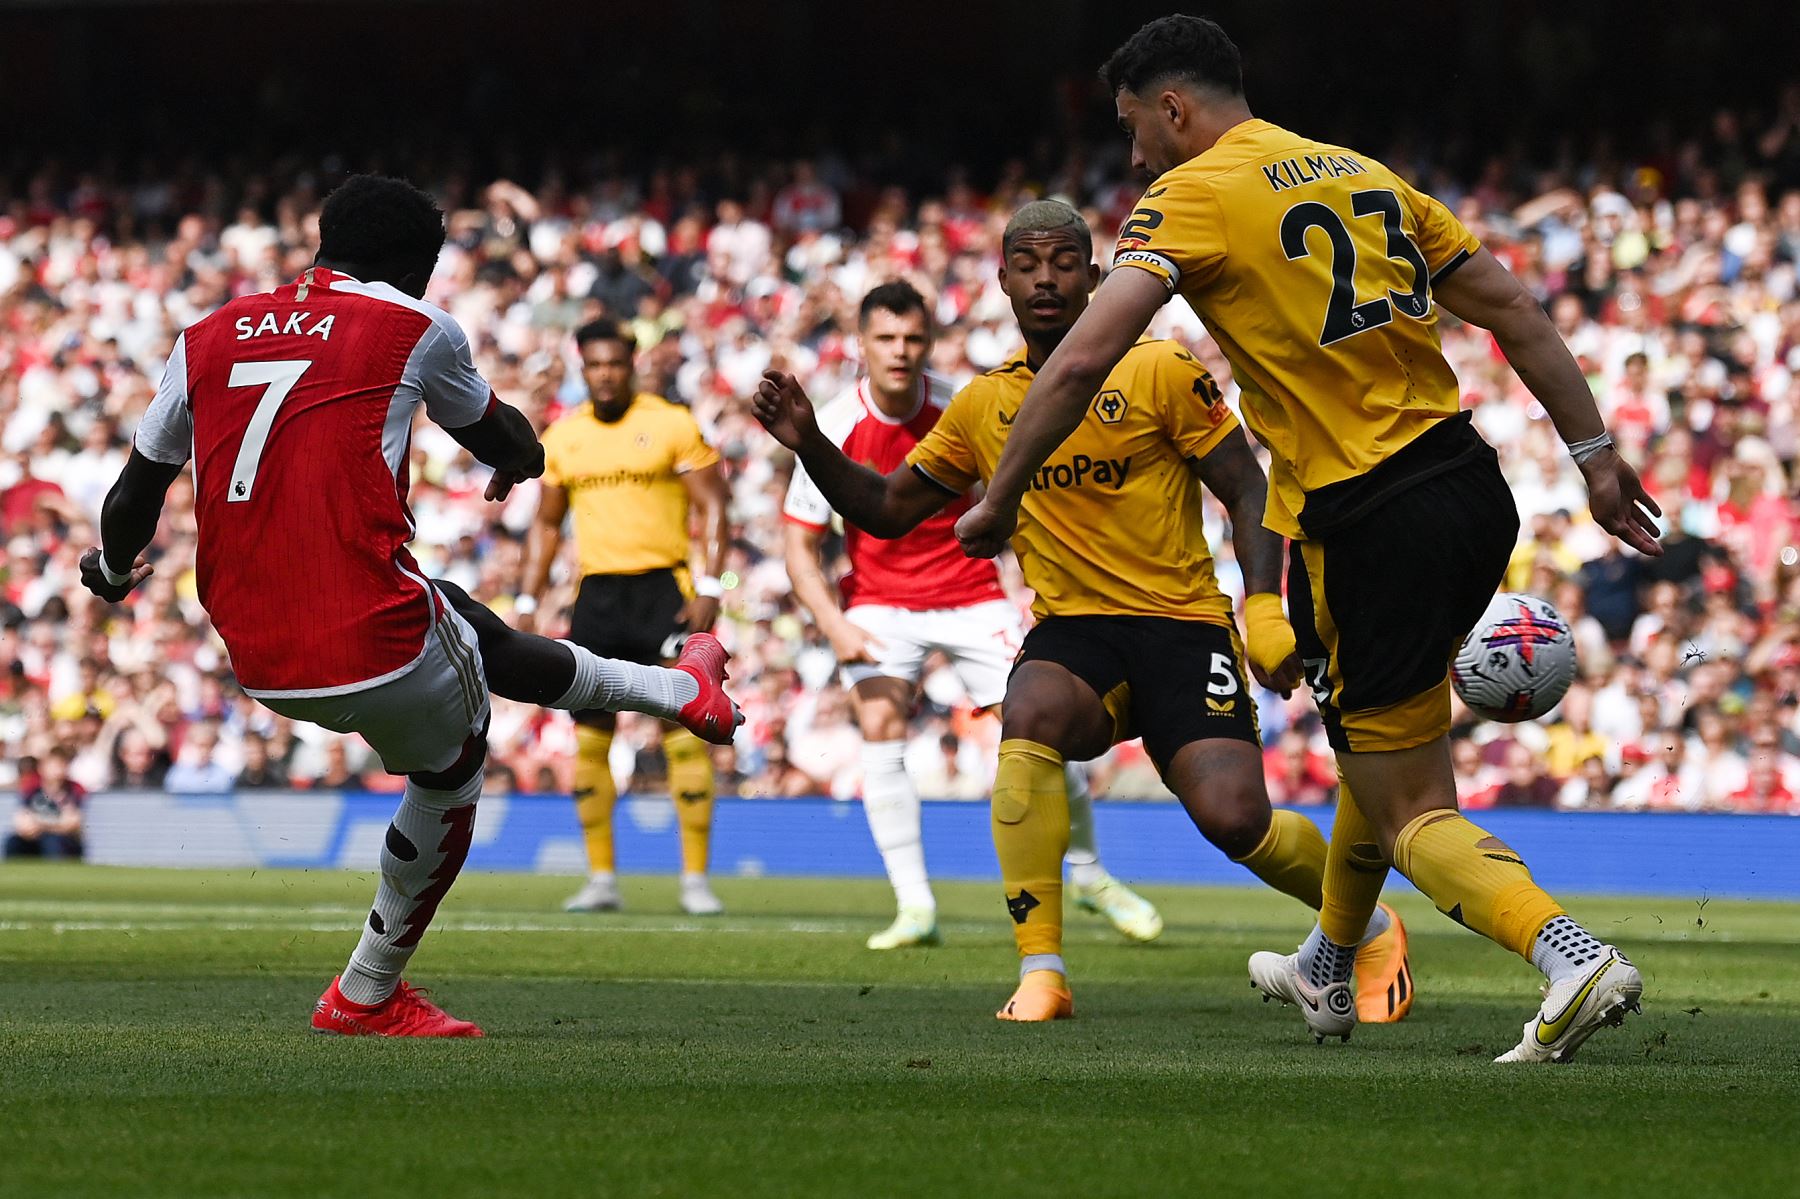 El mediocampista inglés del Arsenal, Bukayo Saka, anota el tercer gol de su equipo durante el partido de fútbol de la Premier League inglesa entre el Arsenal y el Wolverhampton. Foto:ANDINA/AFP